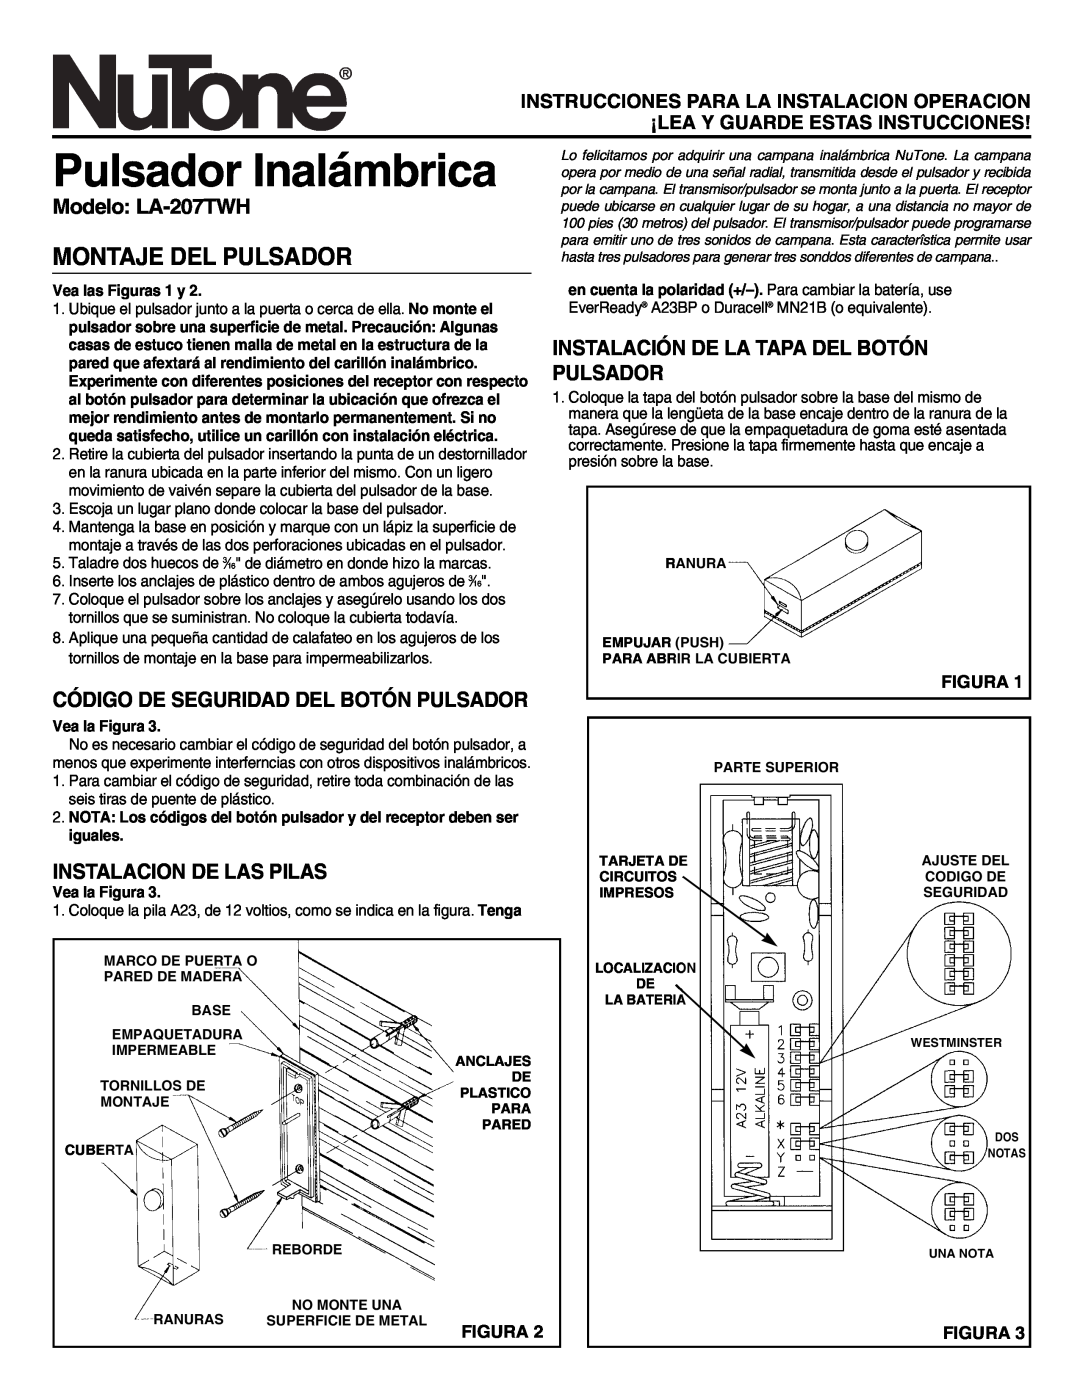 NuTone Pulsador Inalámbrica, Montaje Del Pulsador, Modelo LA-207TWH, Instalación De La Tapa Del Botón Pulsador, Figura 